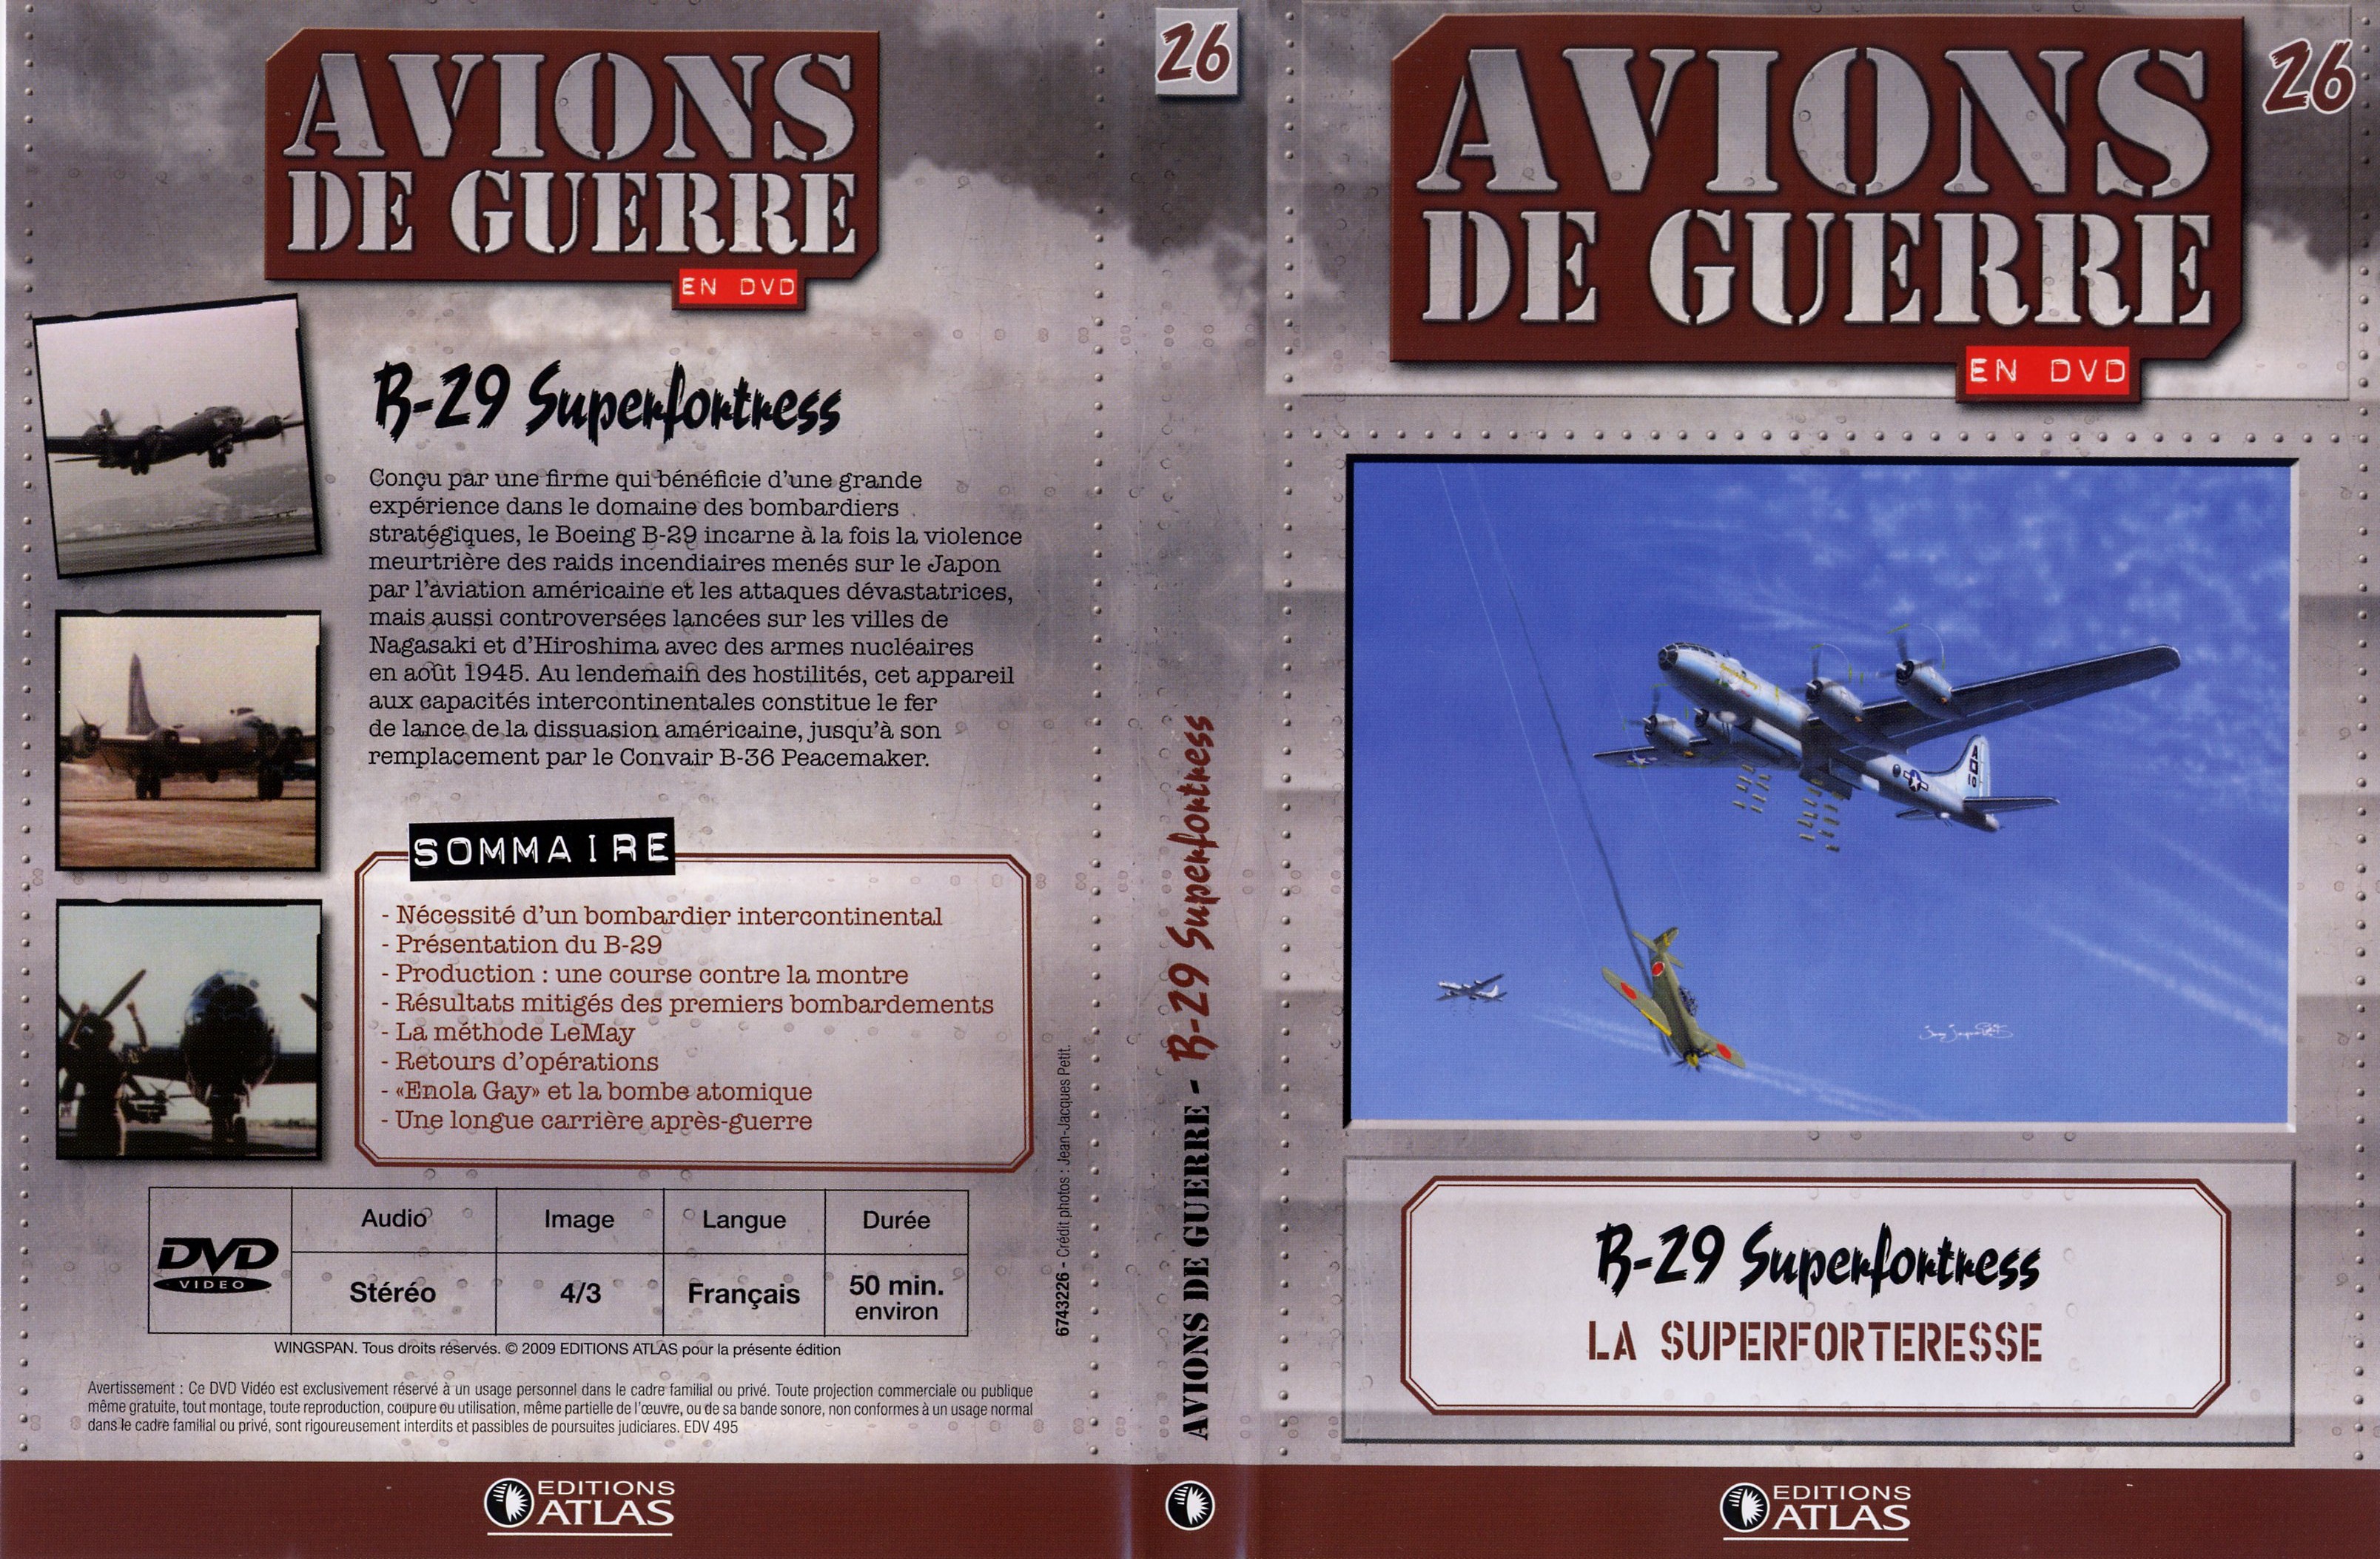 Jaquette DVD Avions de guerre en DVD vol 26